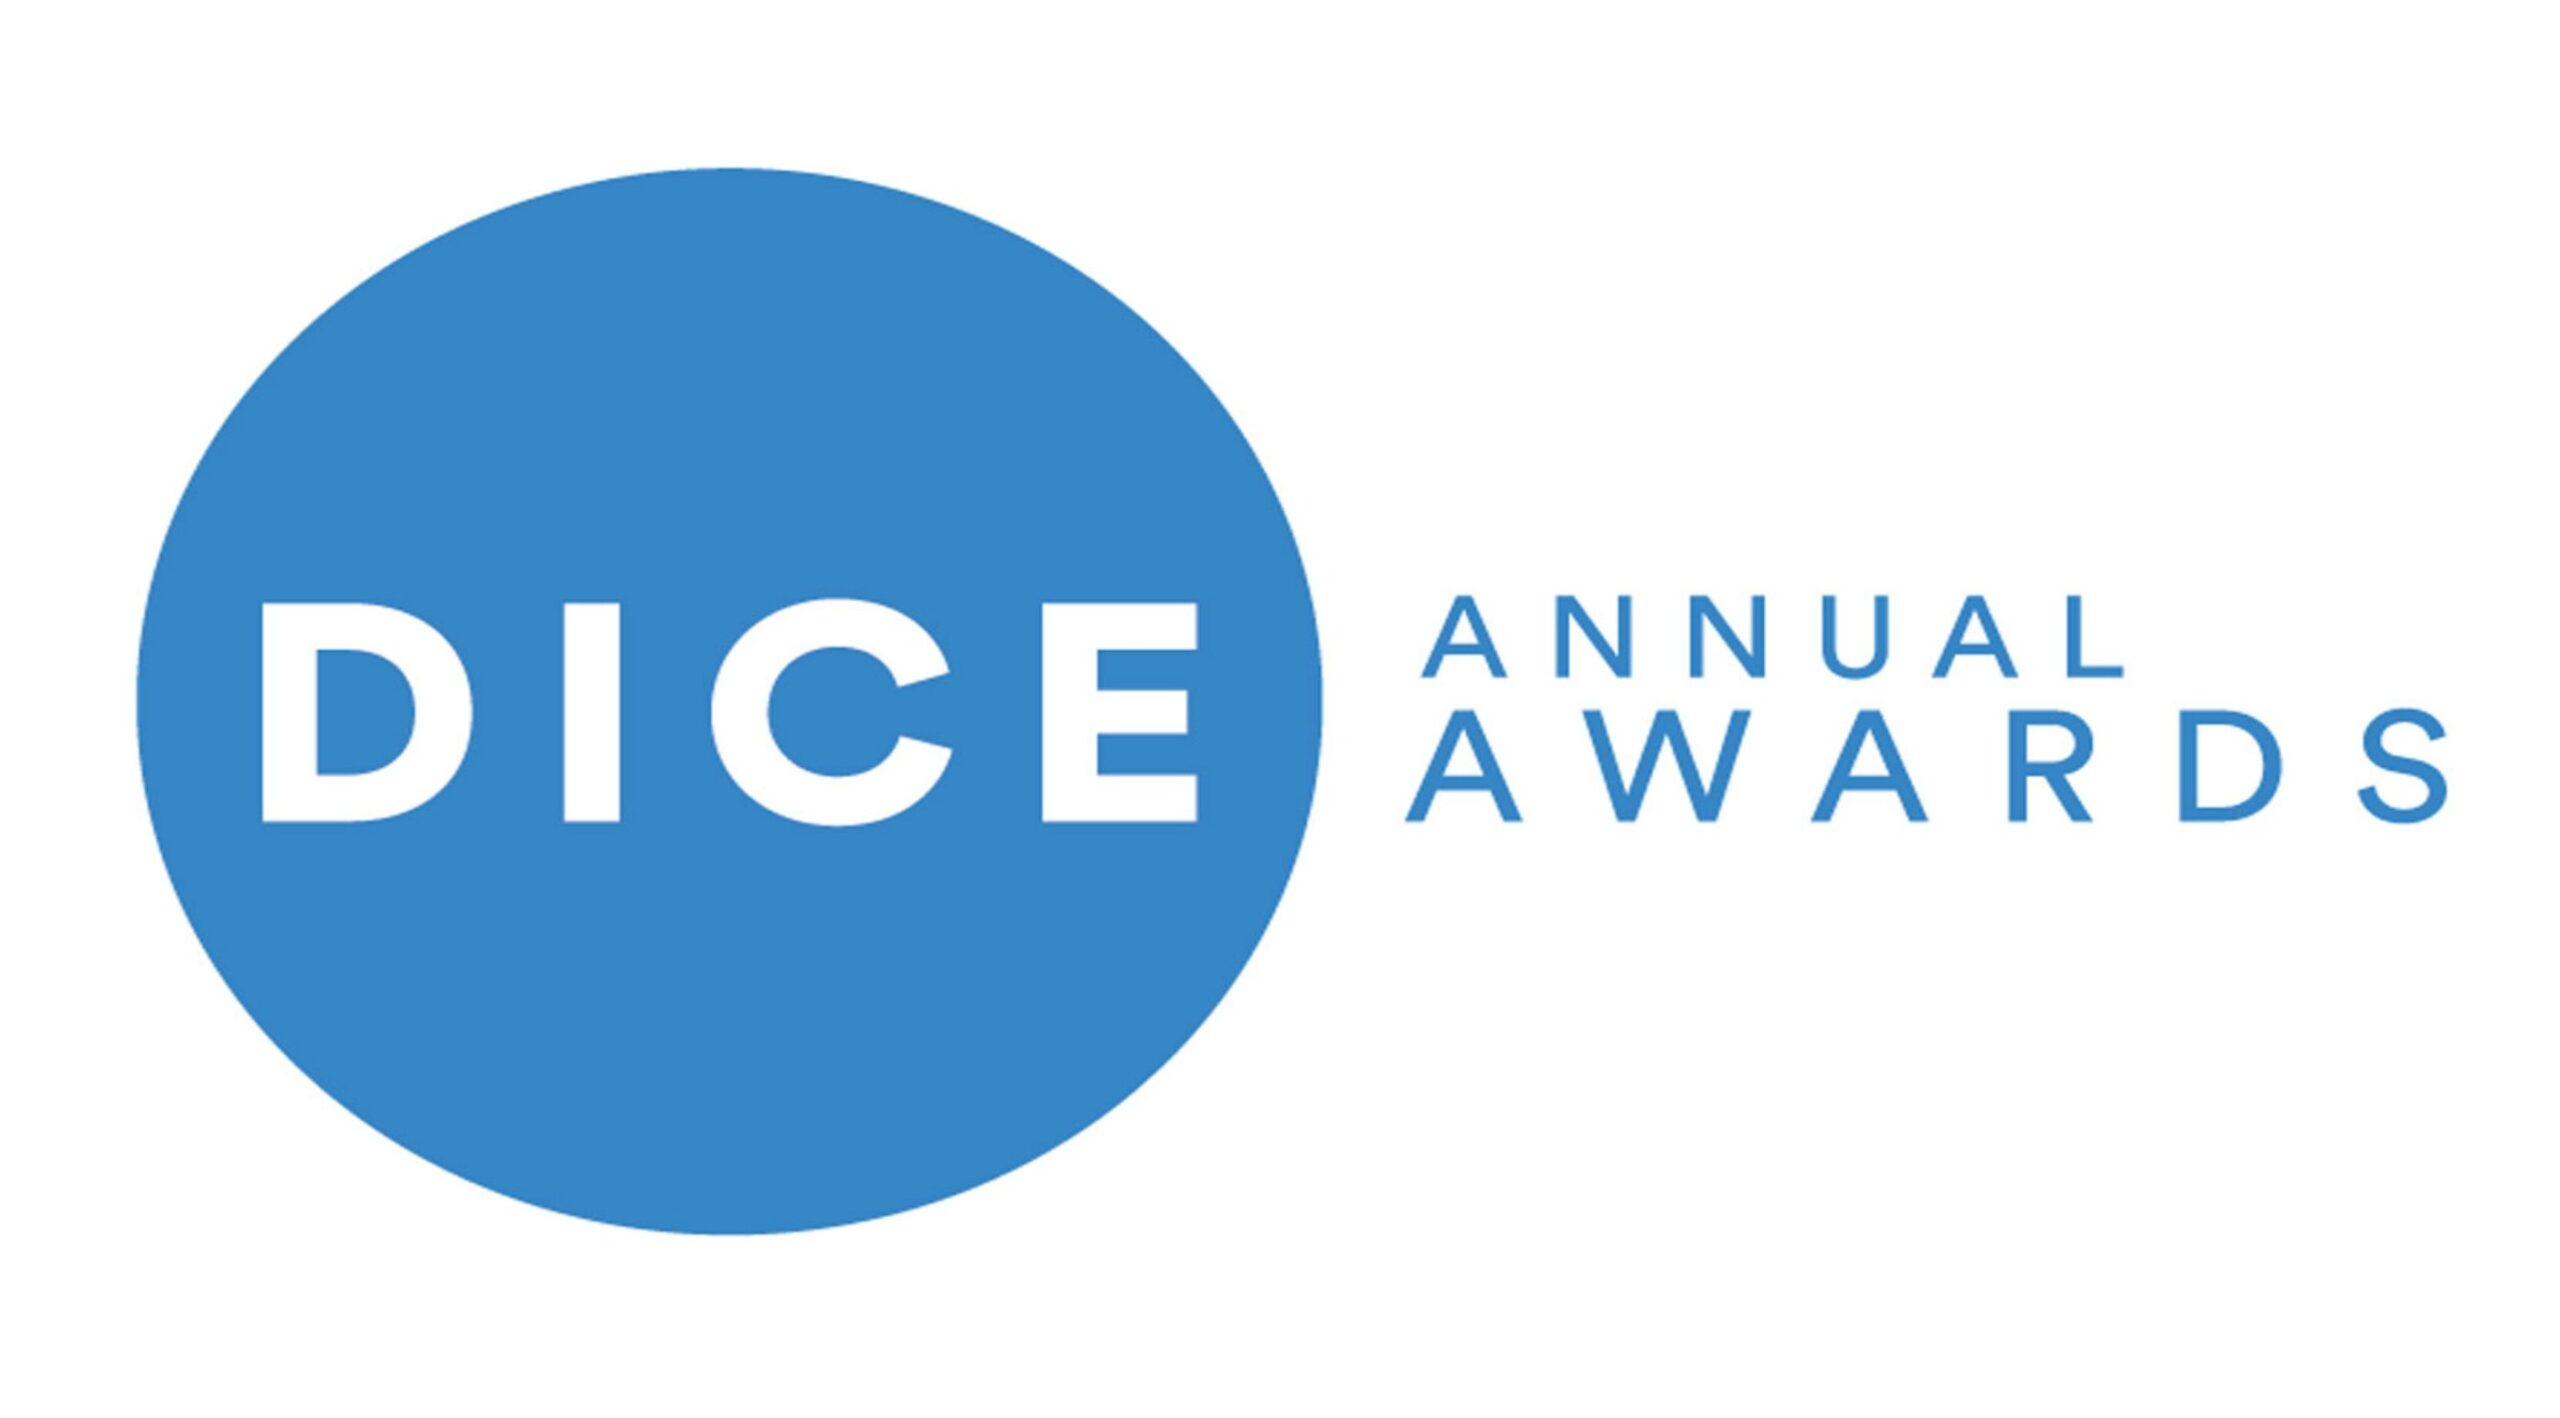 25th Annual D.I.C.E. Awards - Results